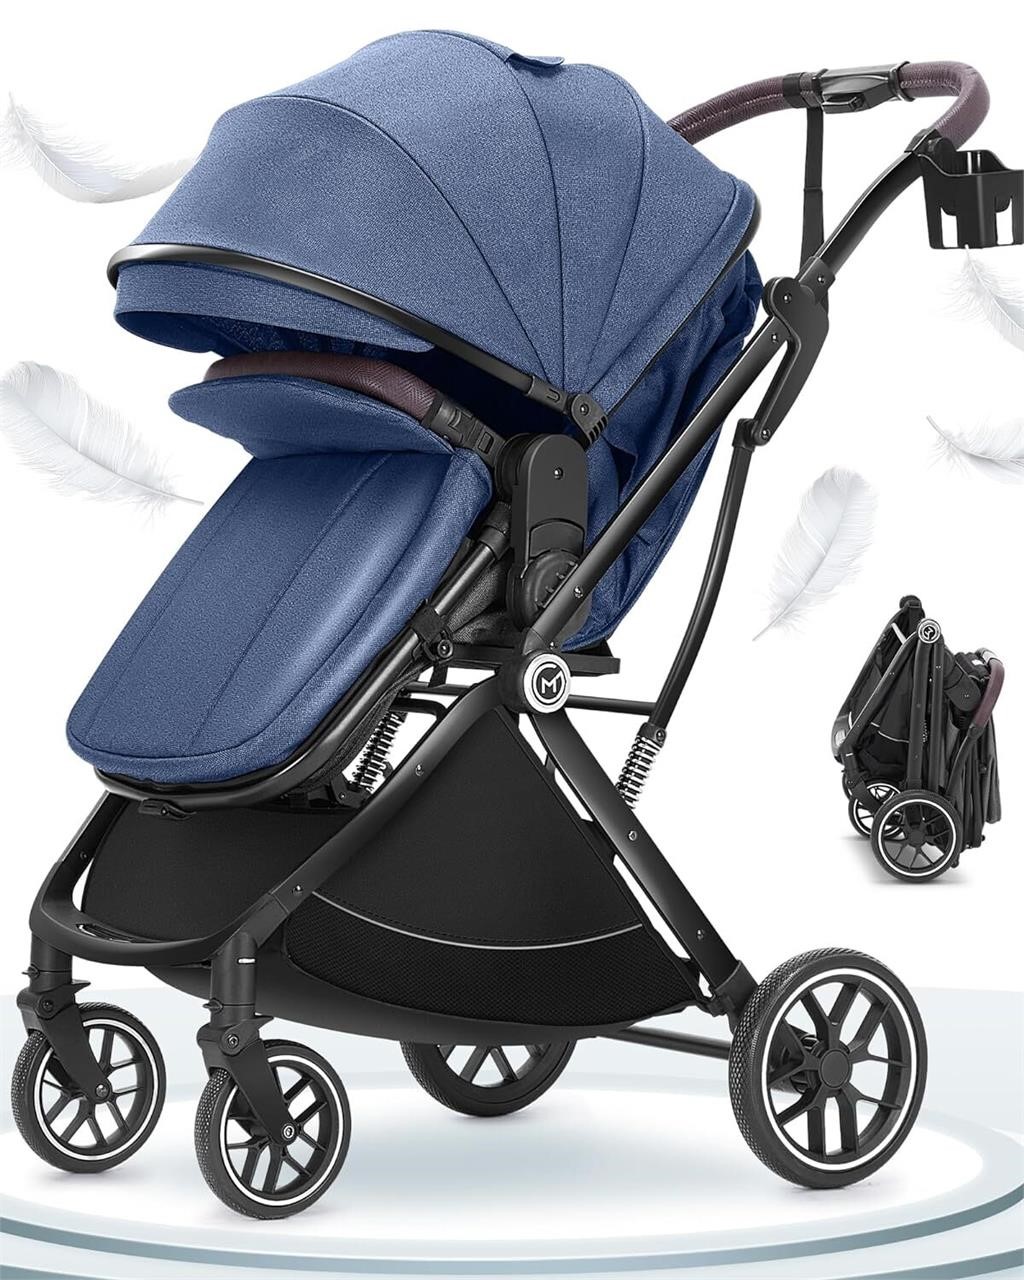 3 in 1 Newborn Stroller  Foldable  Dark Blue